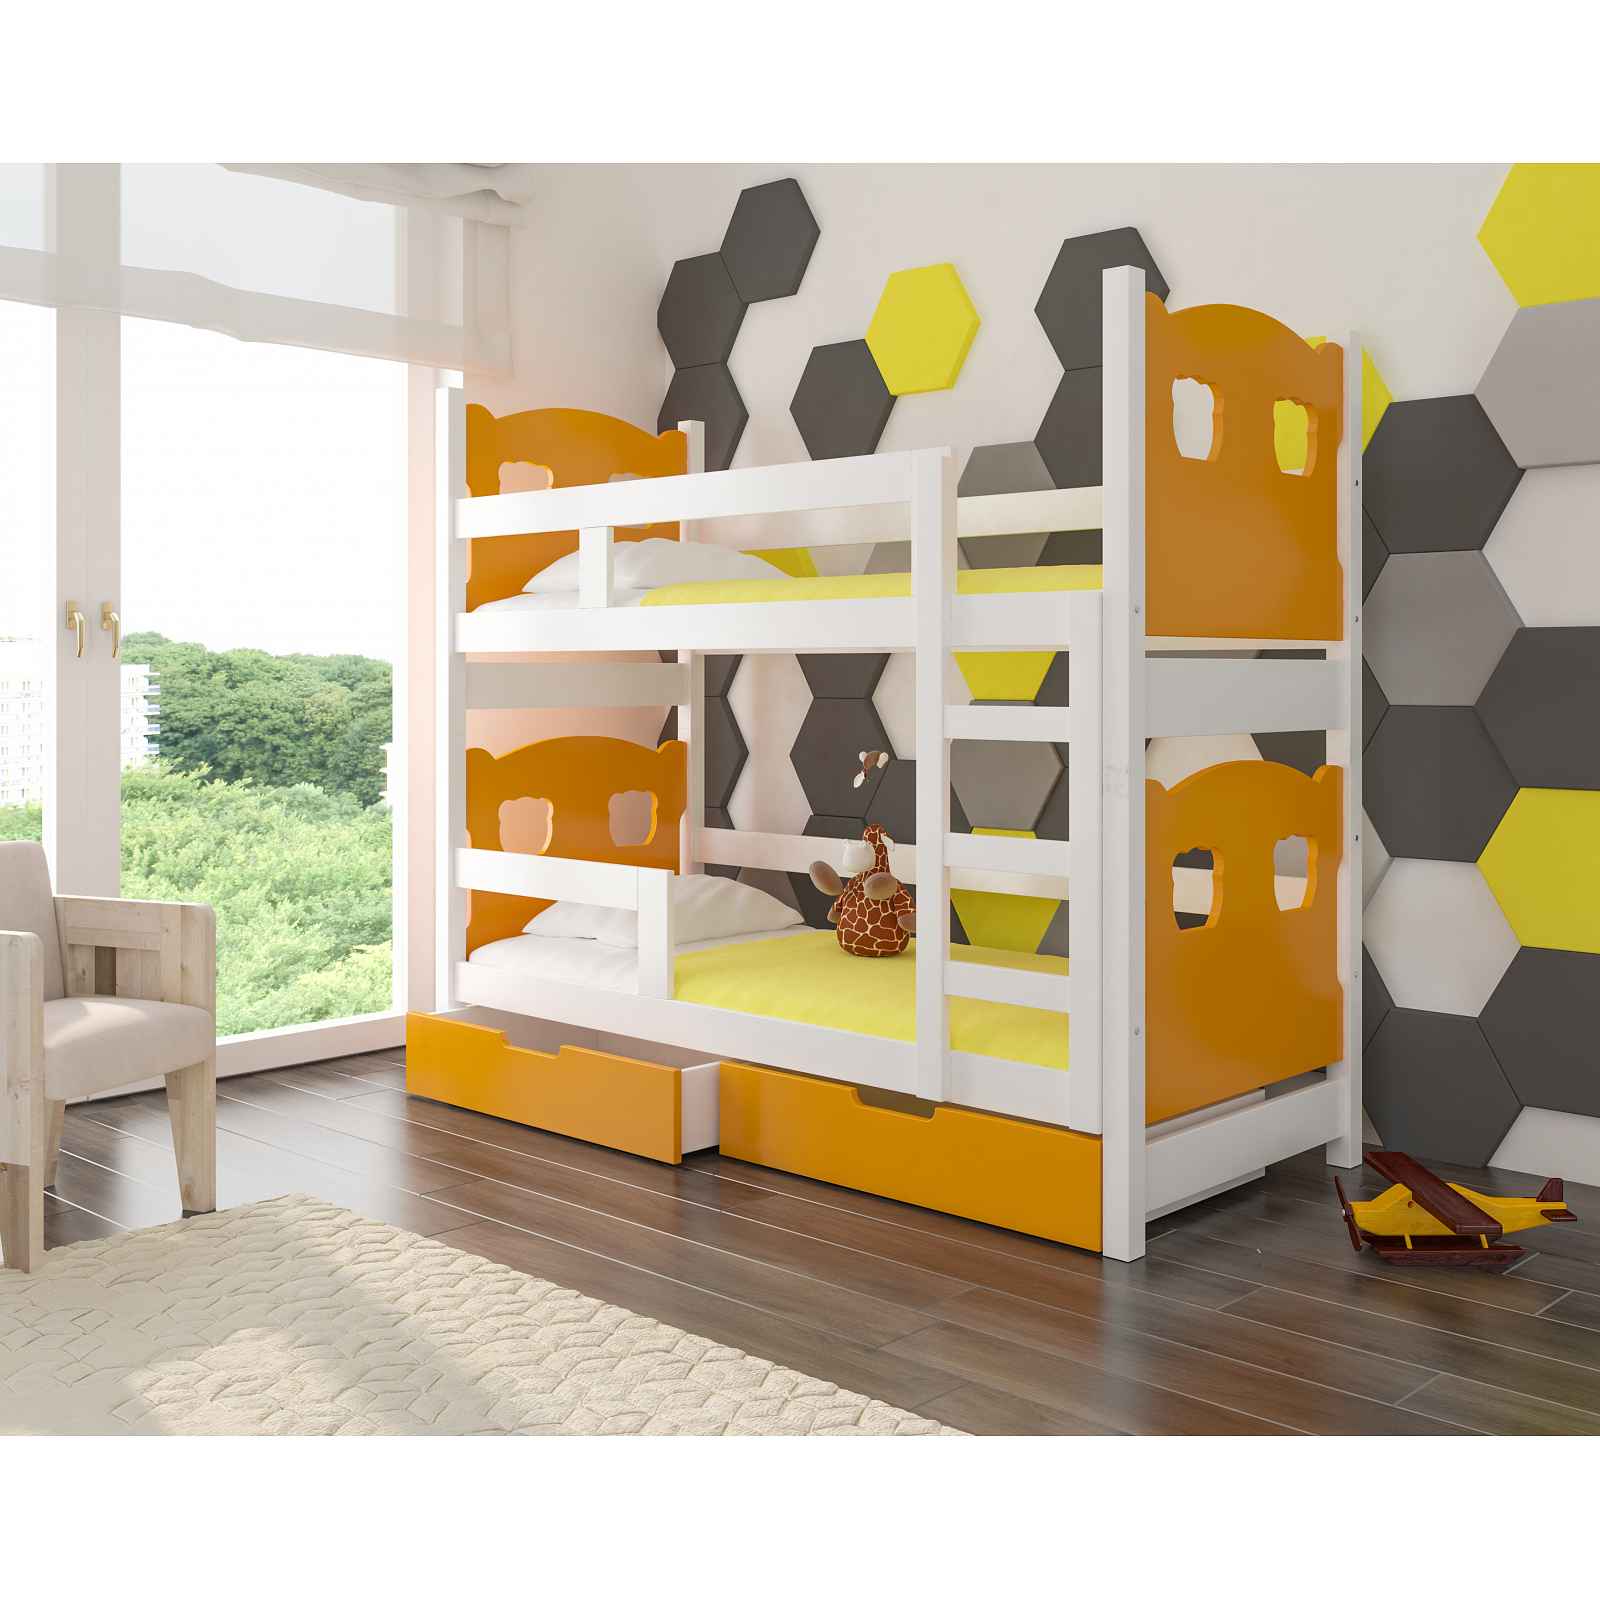 Dětská patrová postel Marika, bílá/oranžová + matrace ZDARMA! HELCEL